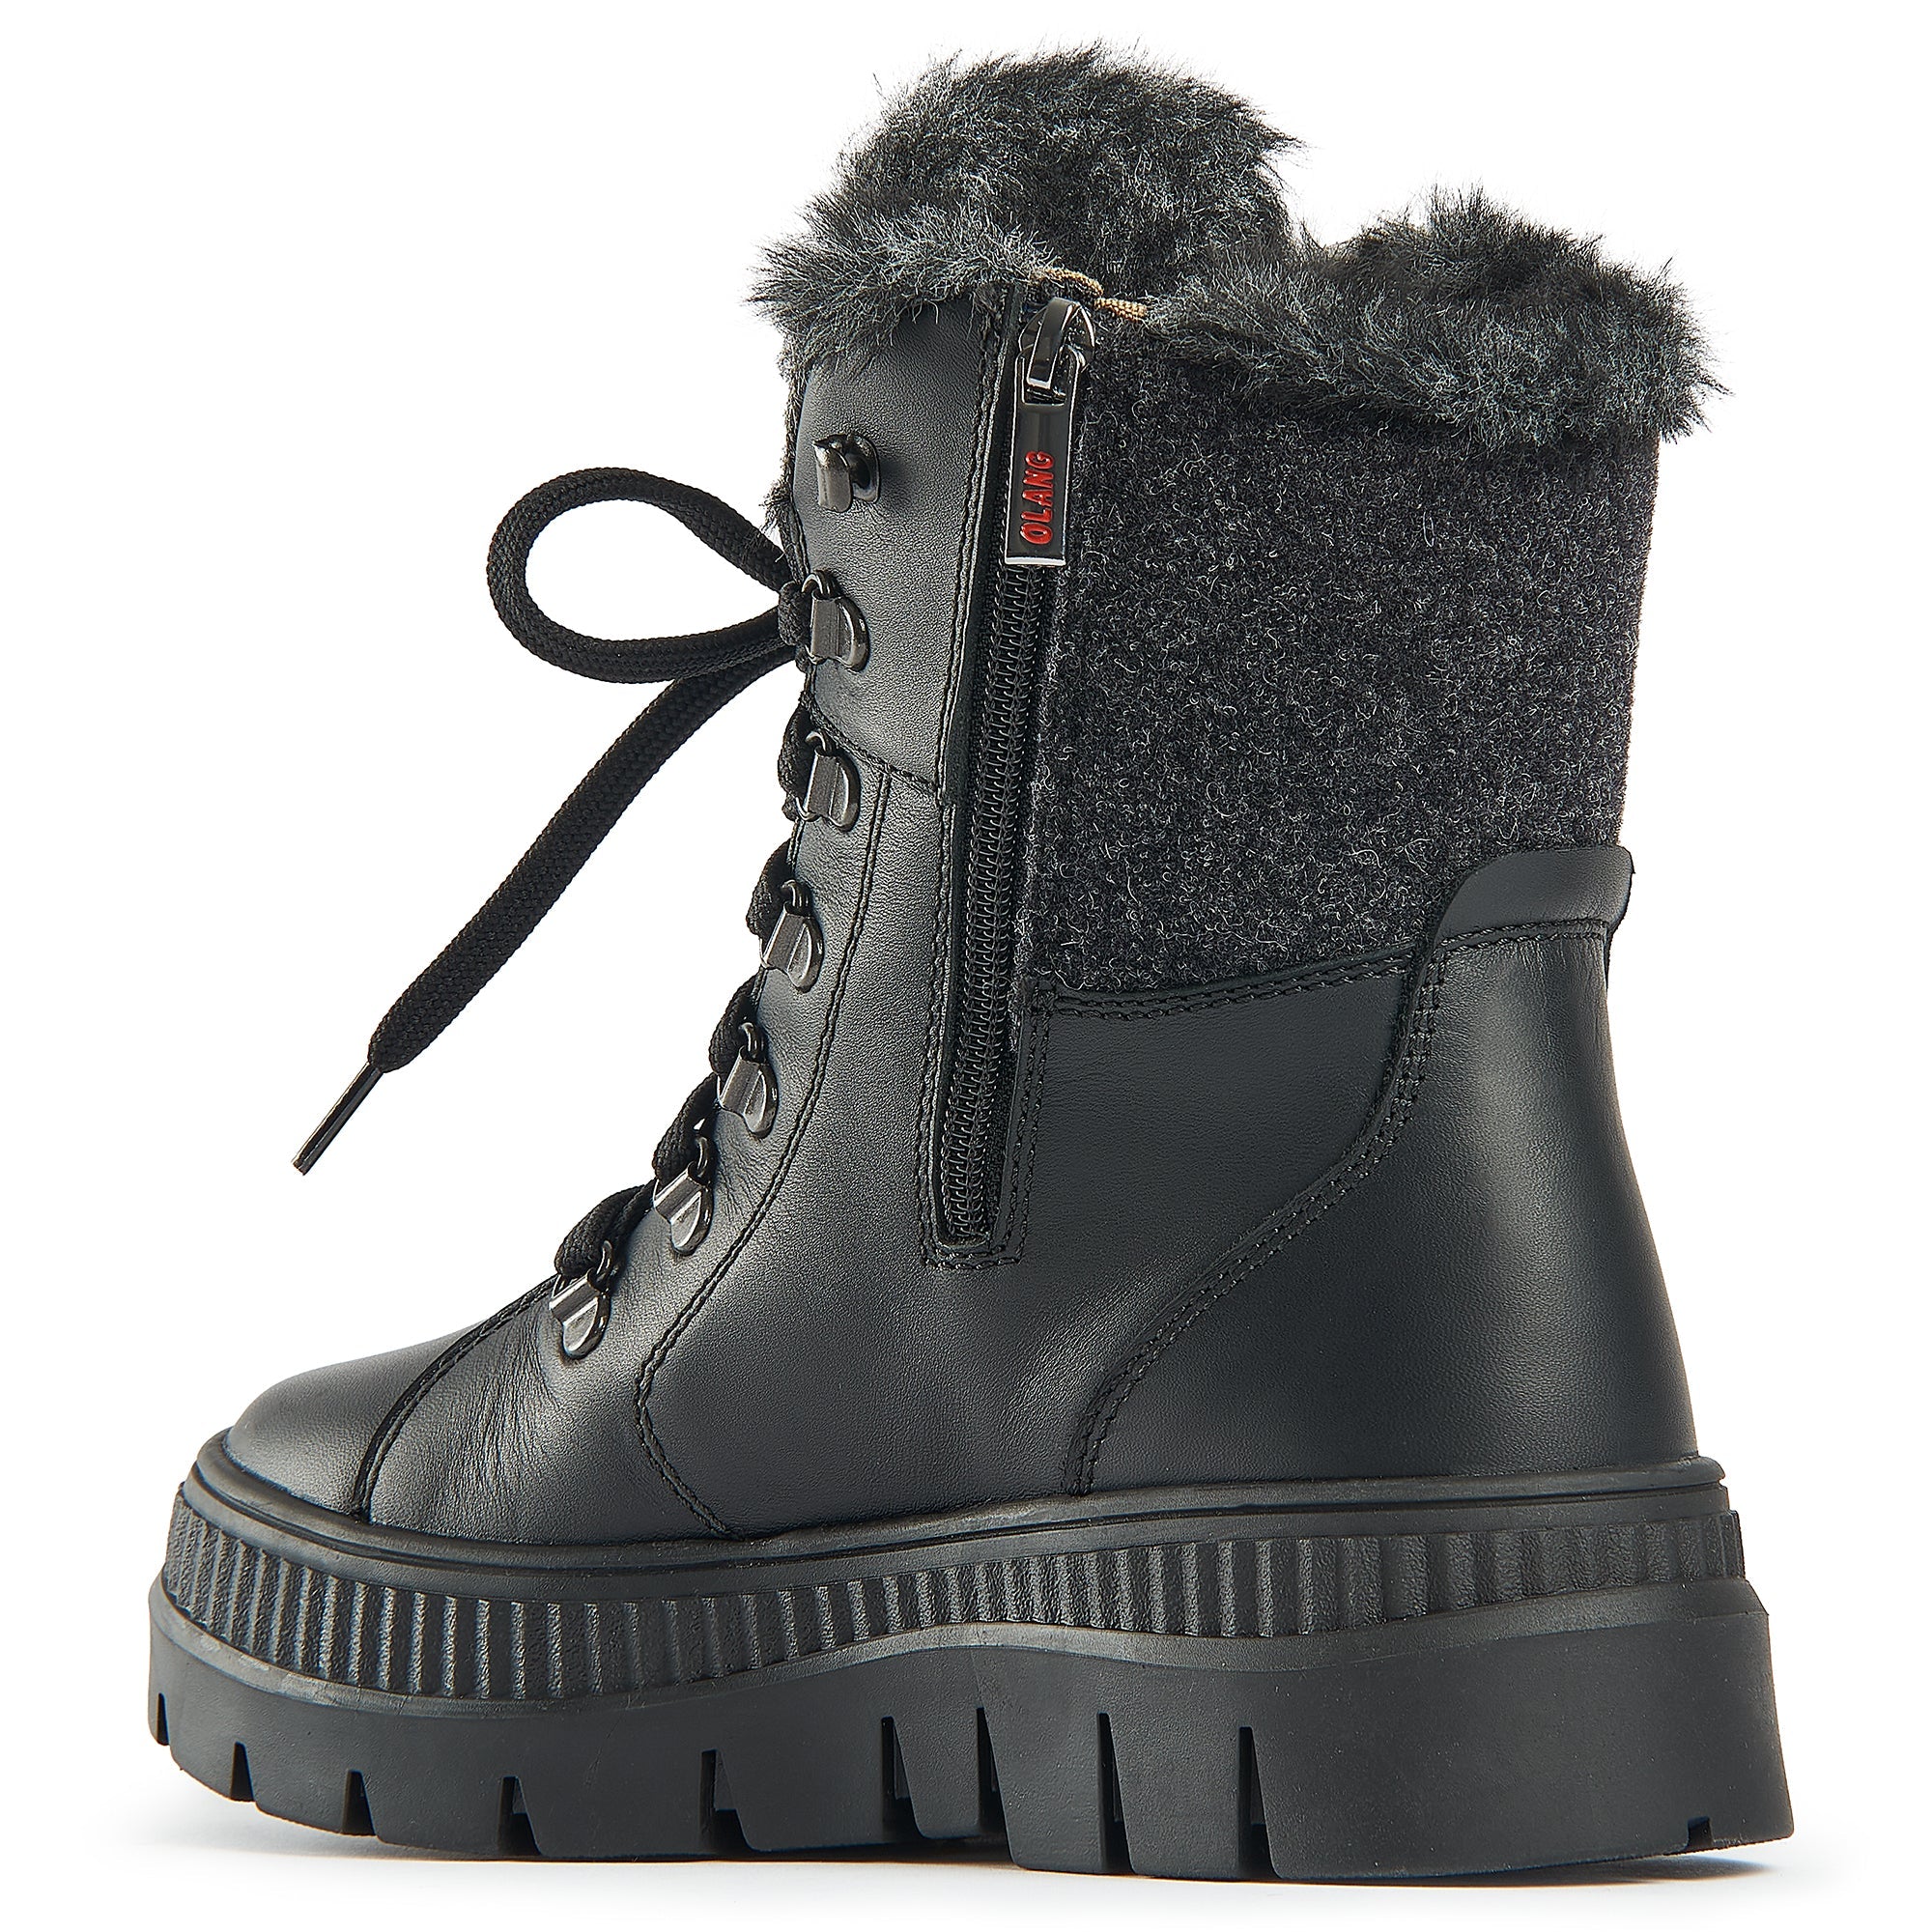 OLANG LOSANNA - Women's winter boots - Boutique Bubbles